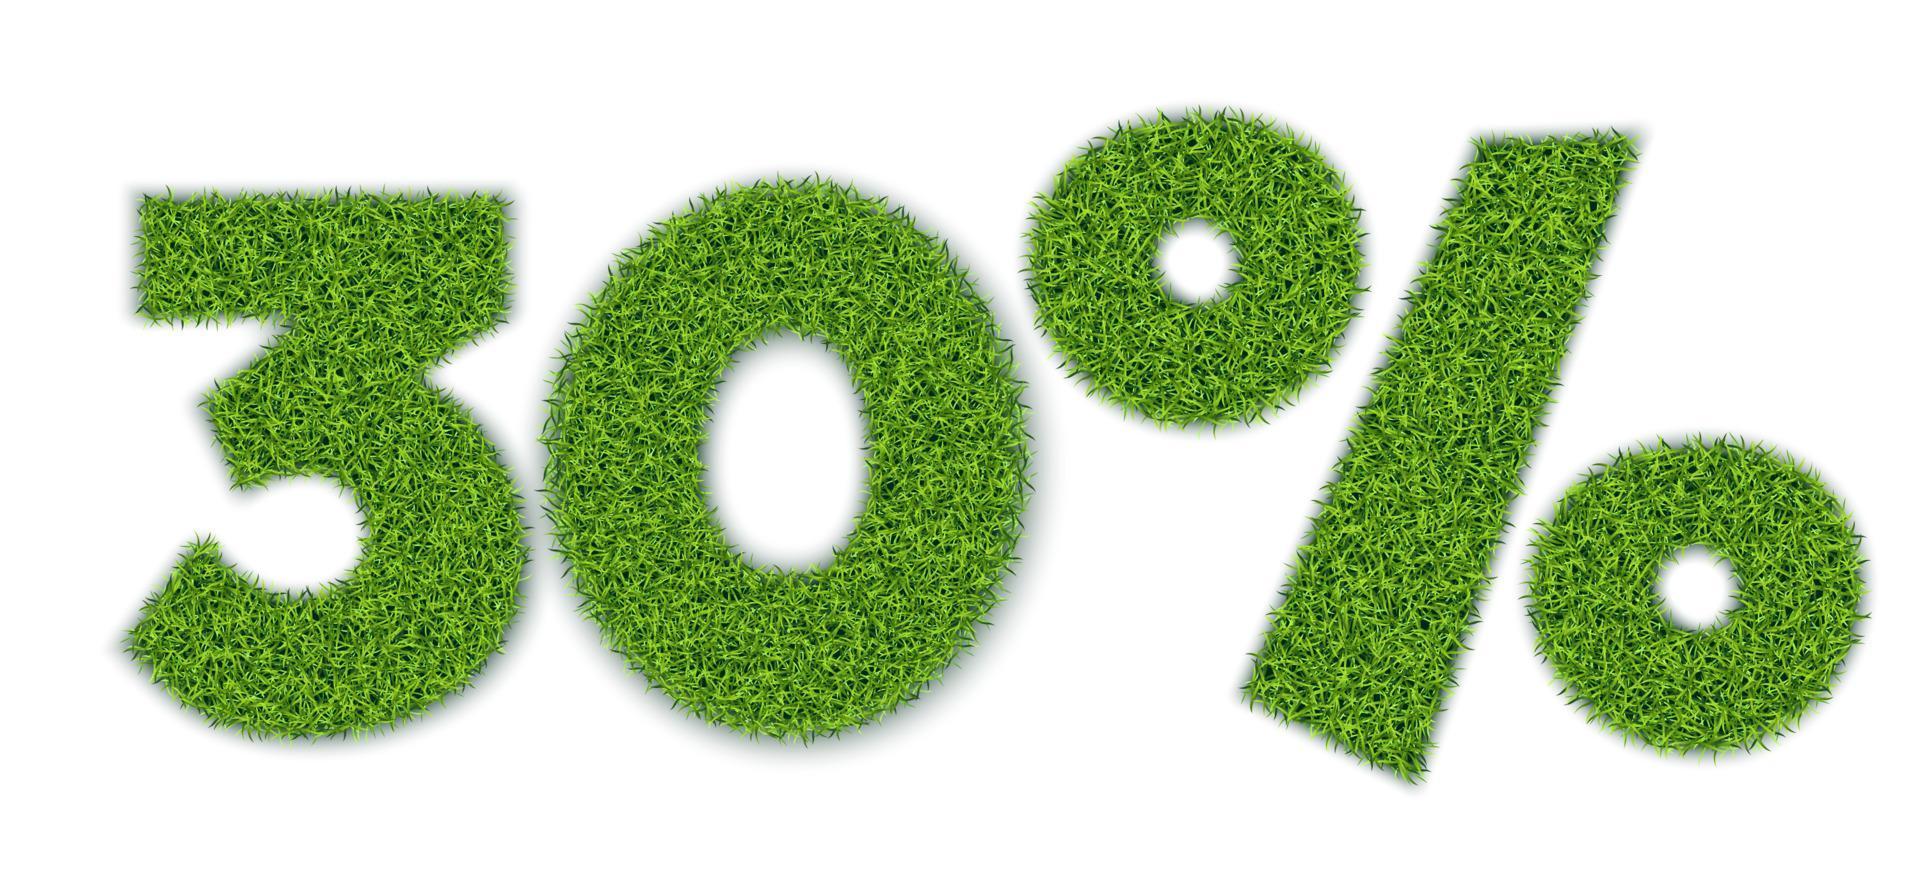 30 por cento de formas com textura de grama de jardim. venda sazonal. banner para publicidade. estilo 3D realista. separado em um fundo branco. vetor. vetor